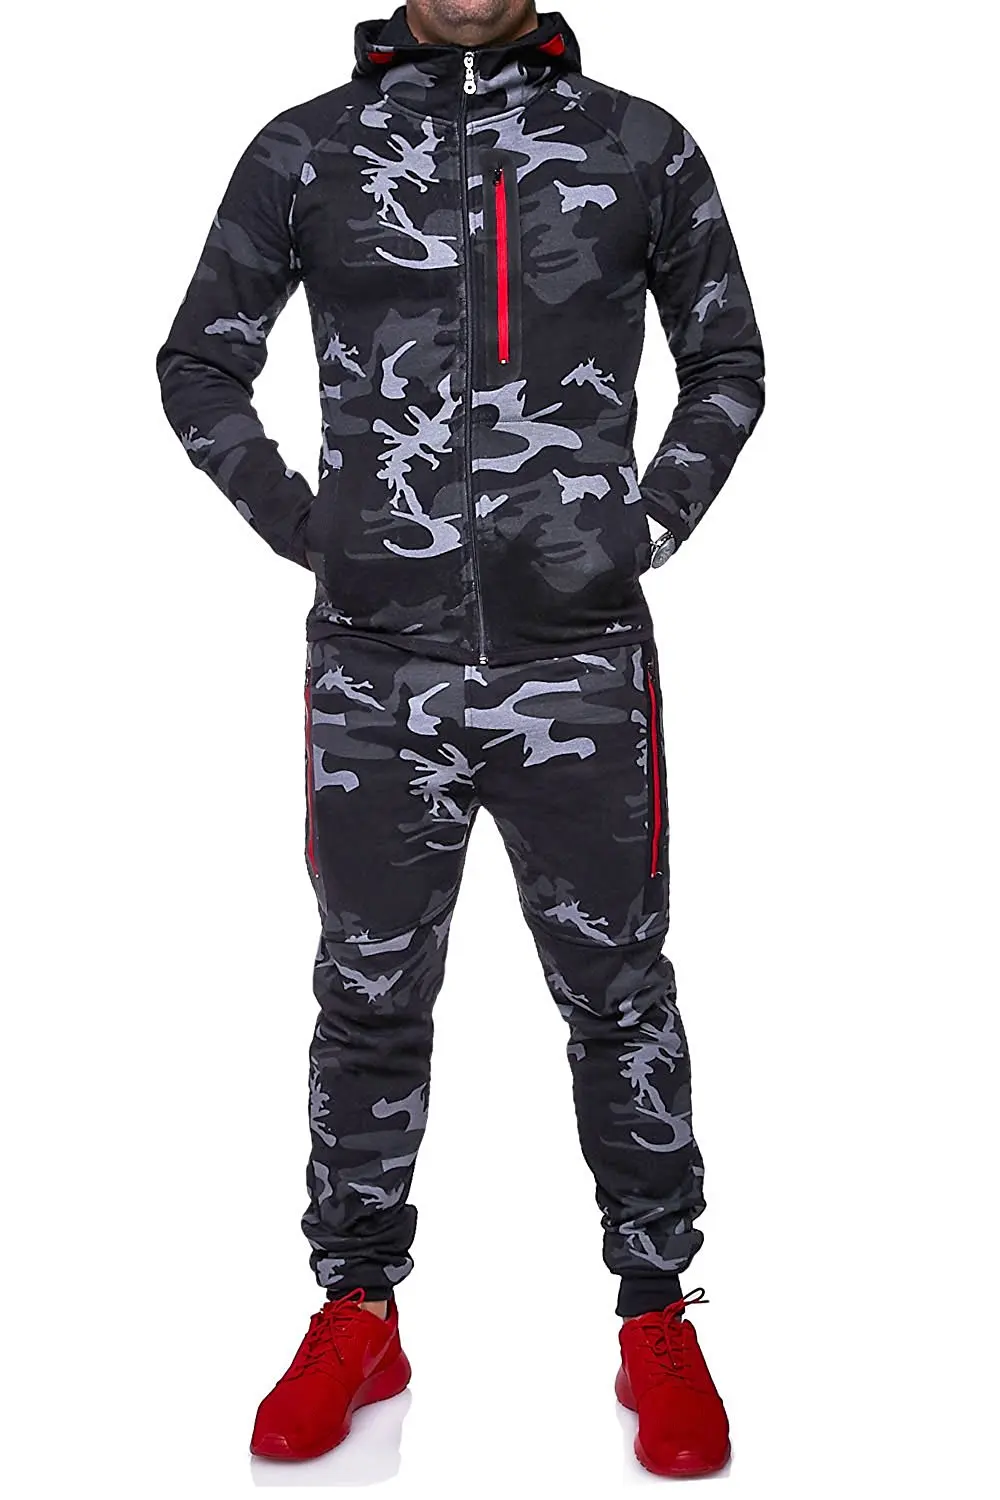 ZOGAA мужские комплекты спортивный костюм термобель камуфляжная куртка Камуфляжный суперсухой спортивный костюм